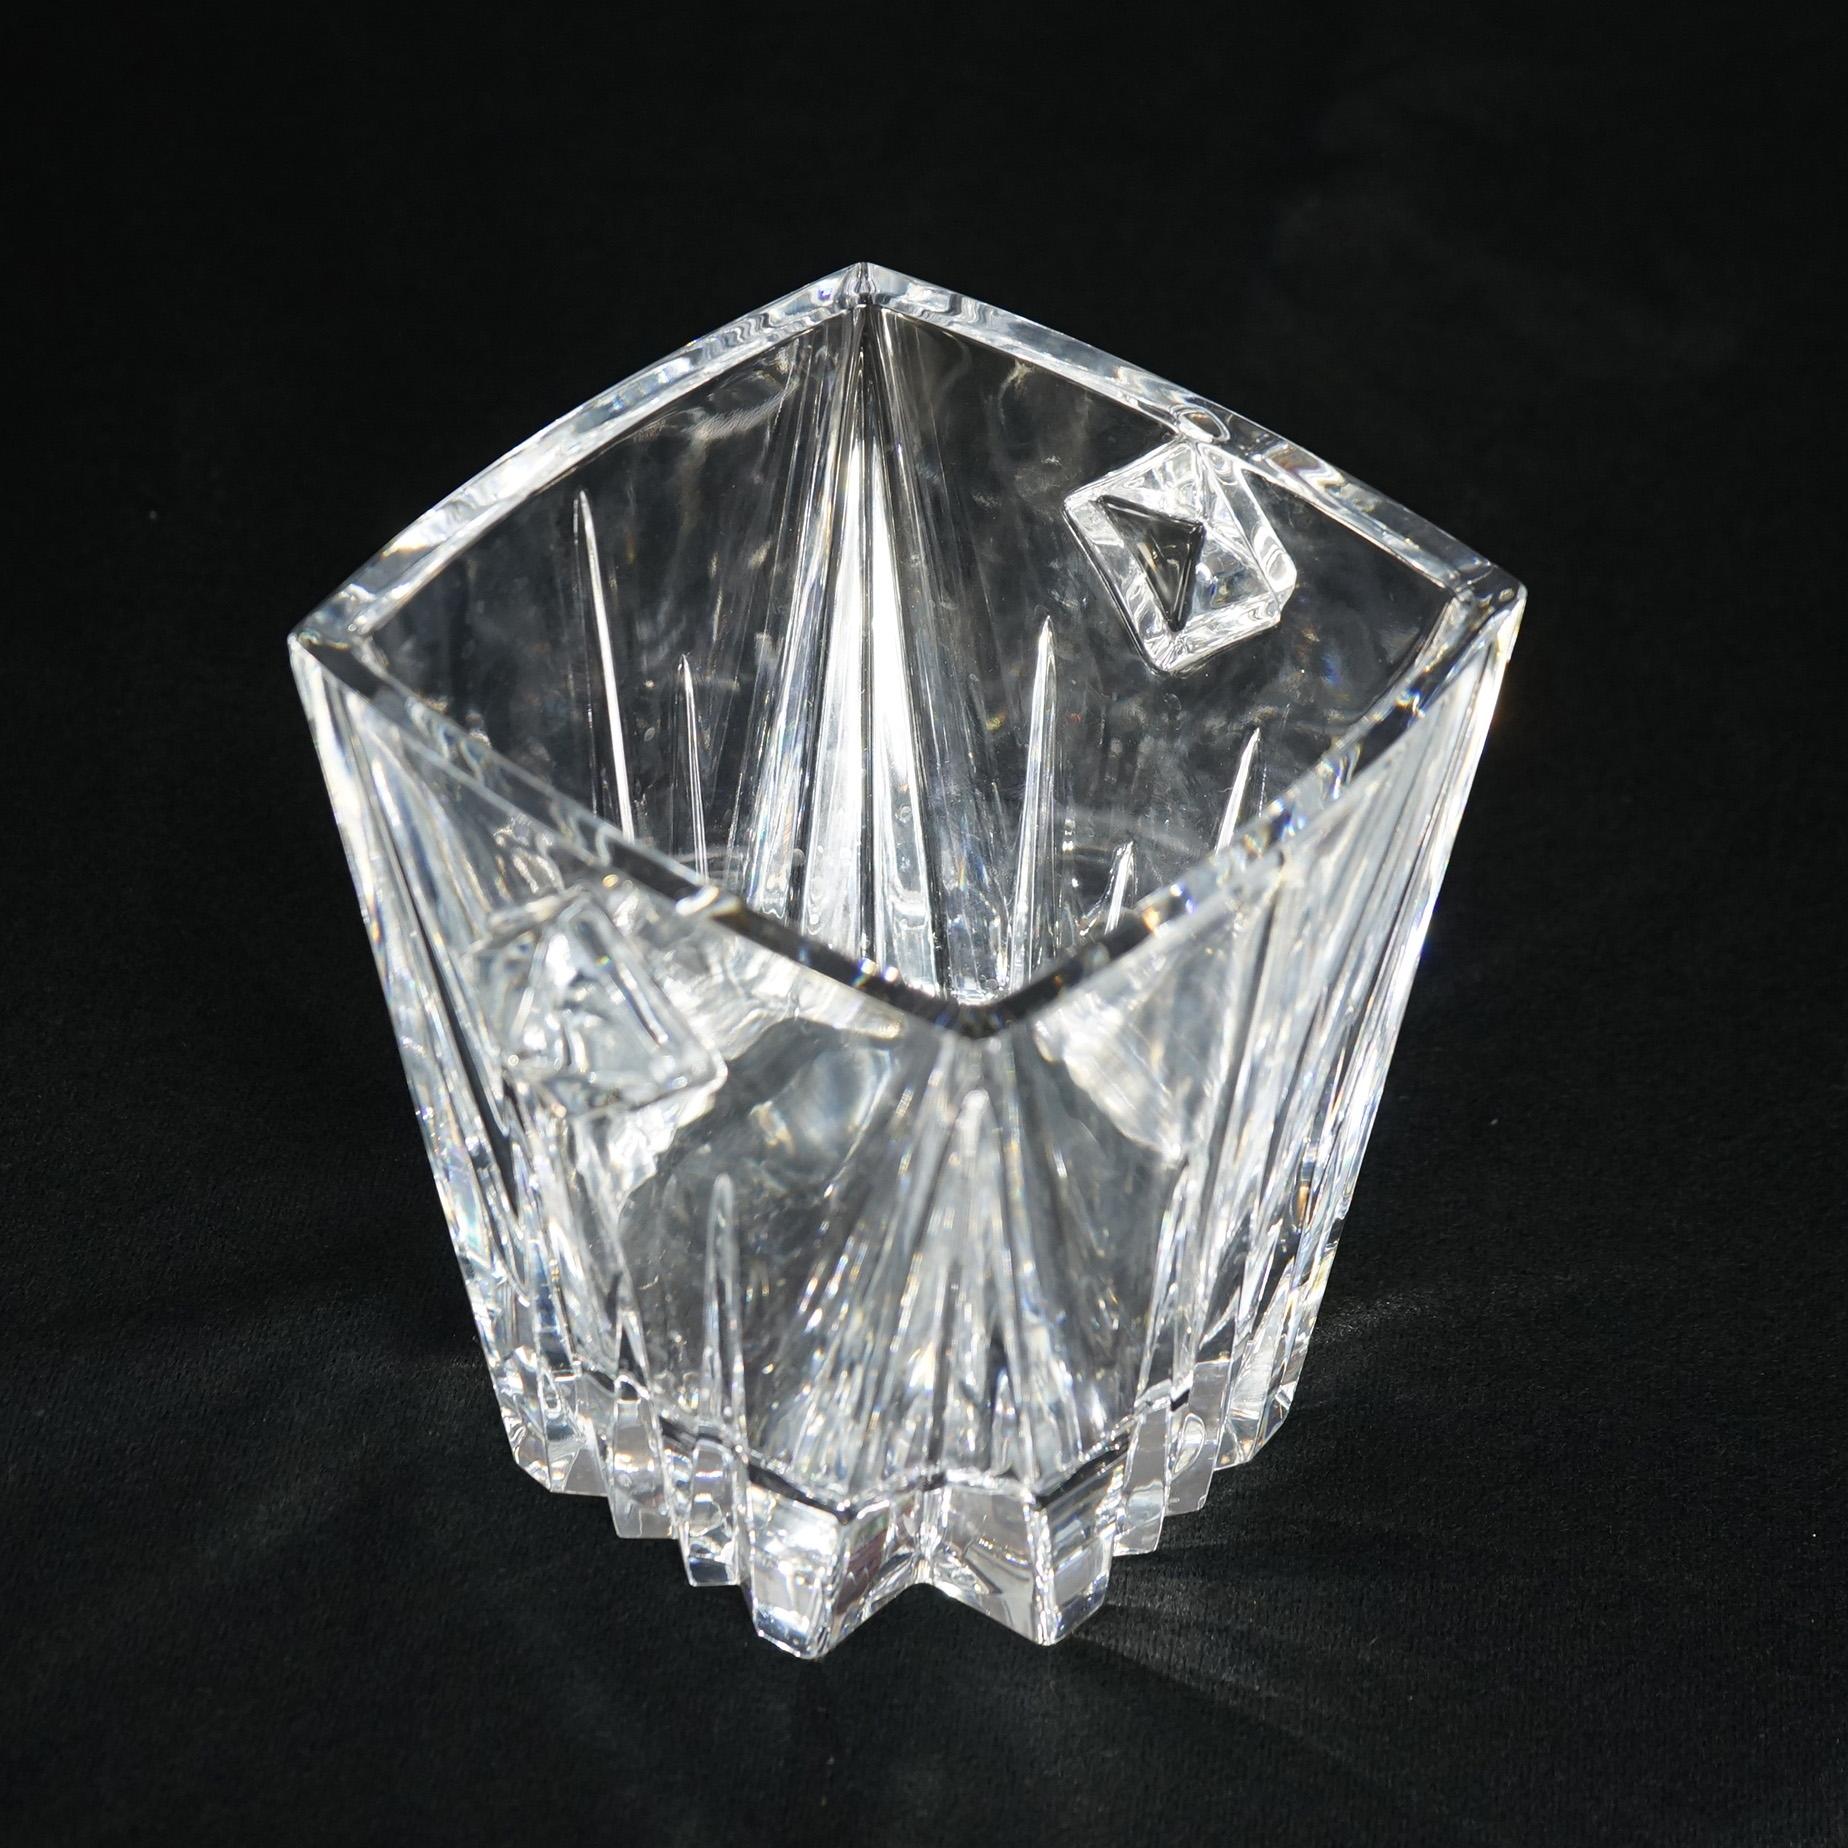 Seau à glace à double poignée Lenox Ovations en cristal 20e siècle

Dimensions : 7,5''H x 8''W x 6,75''D